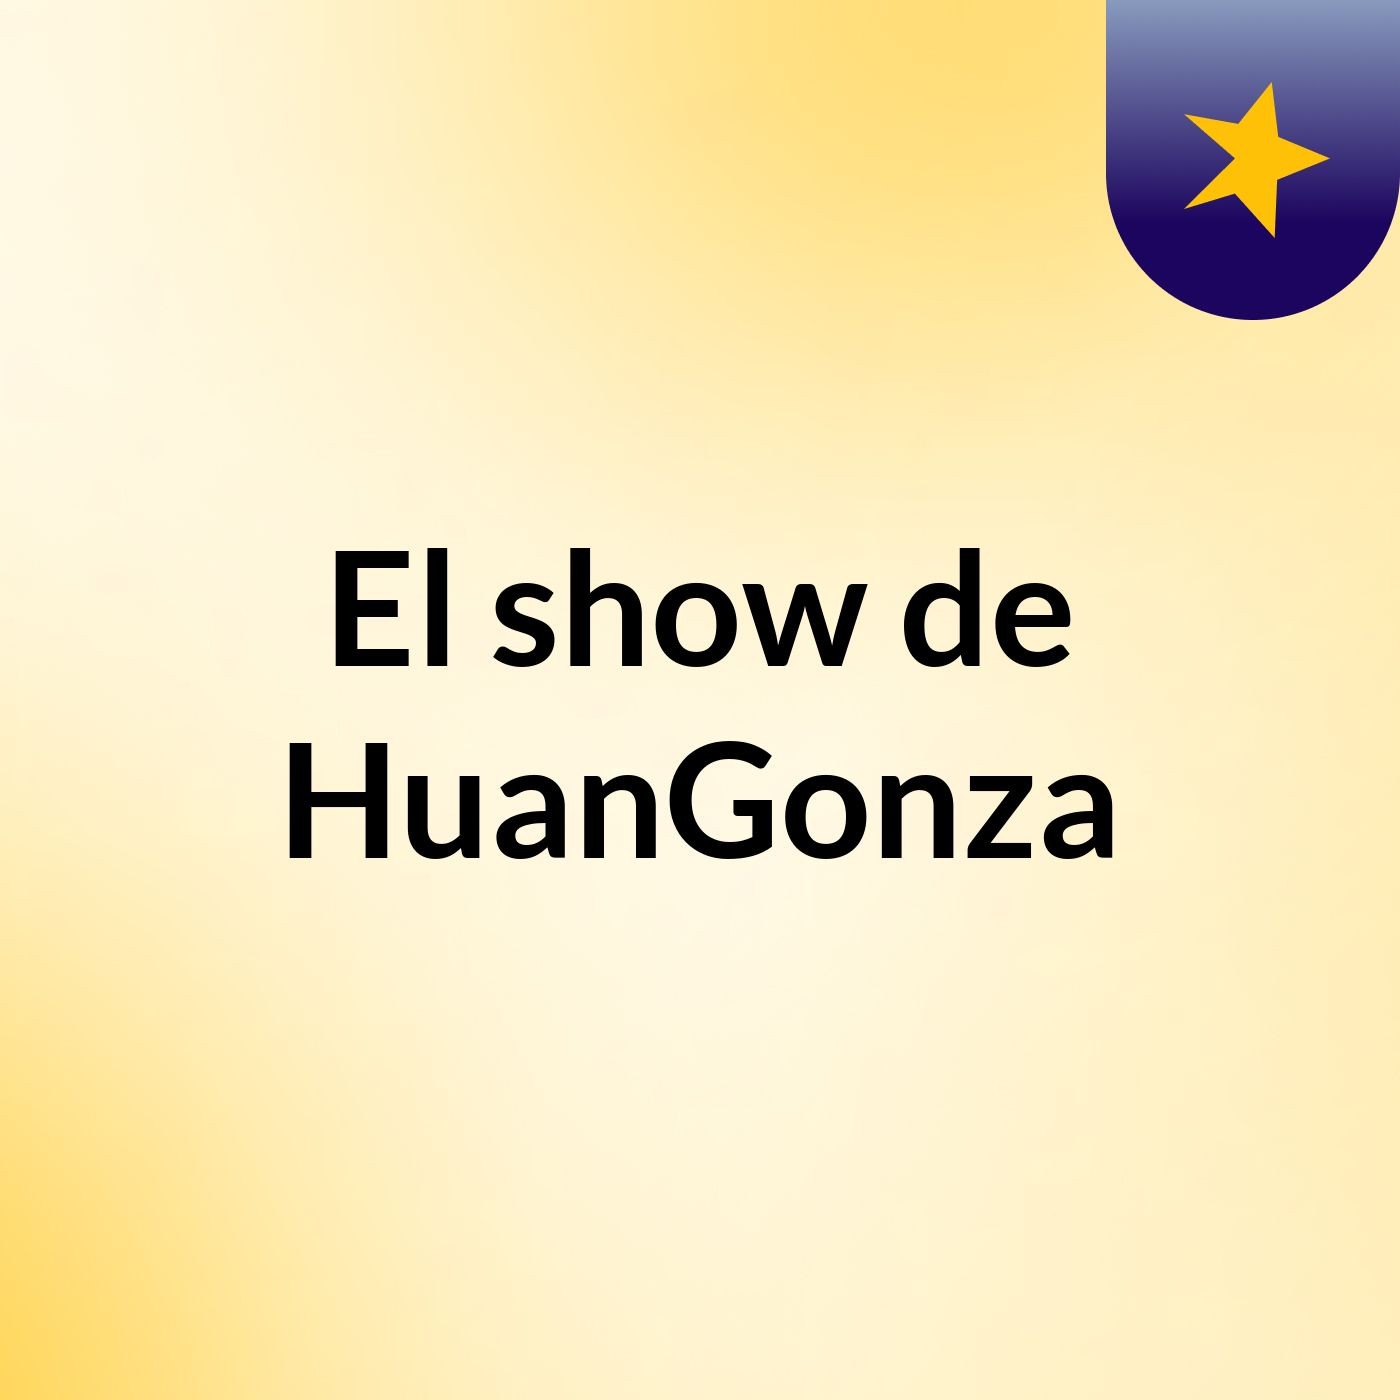 Episodio 2 - El show de HuanGonza